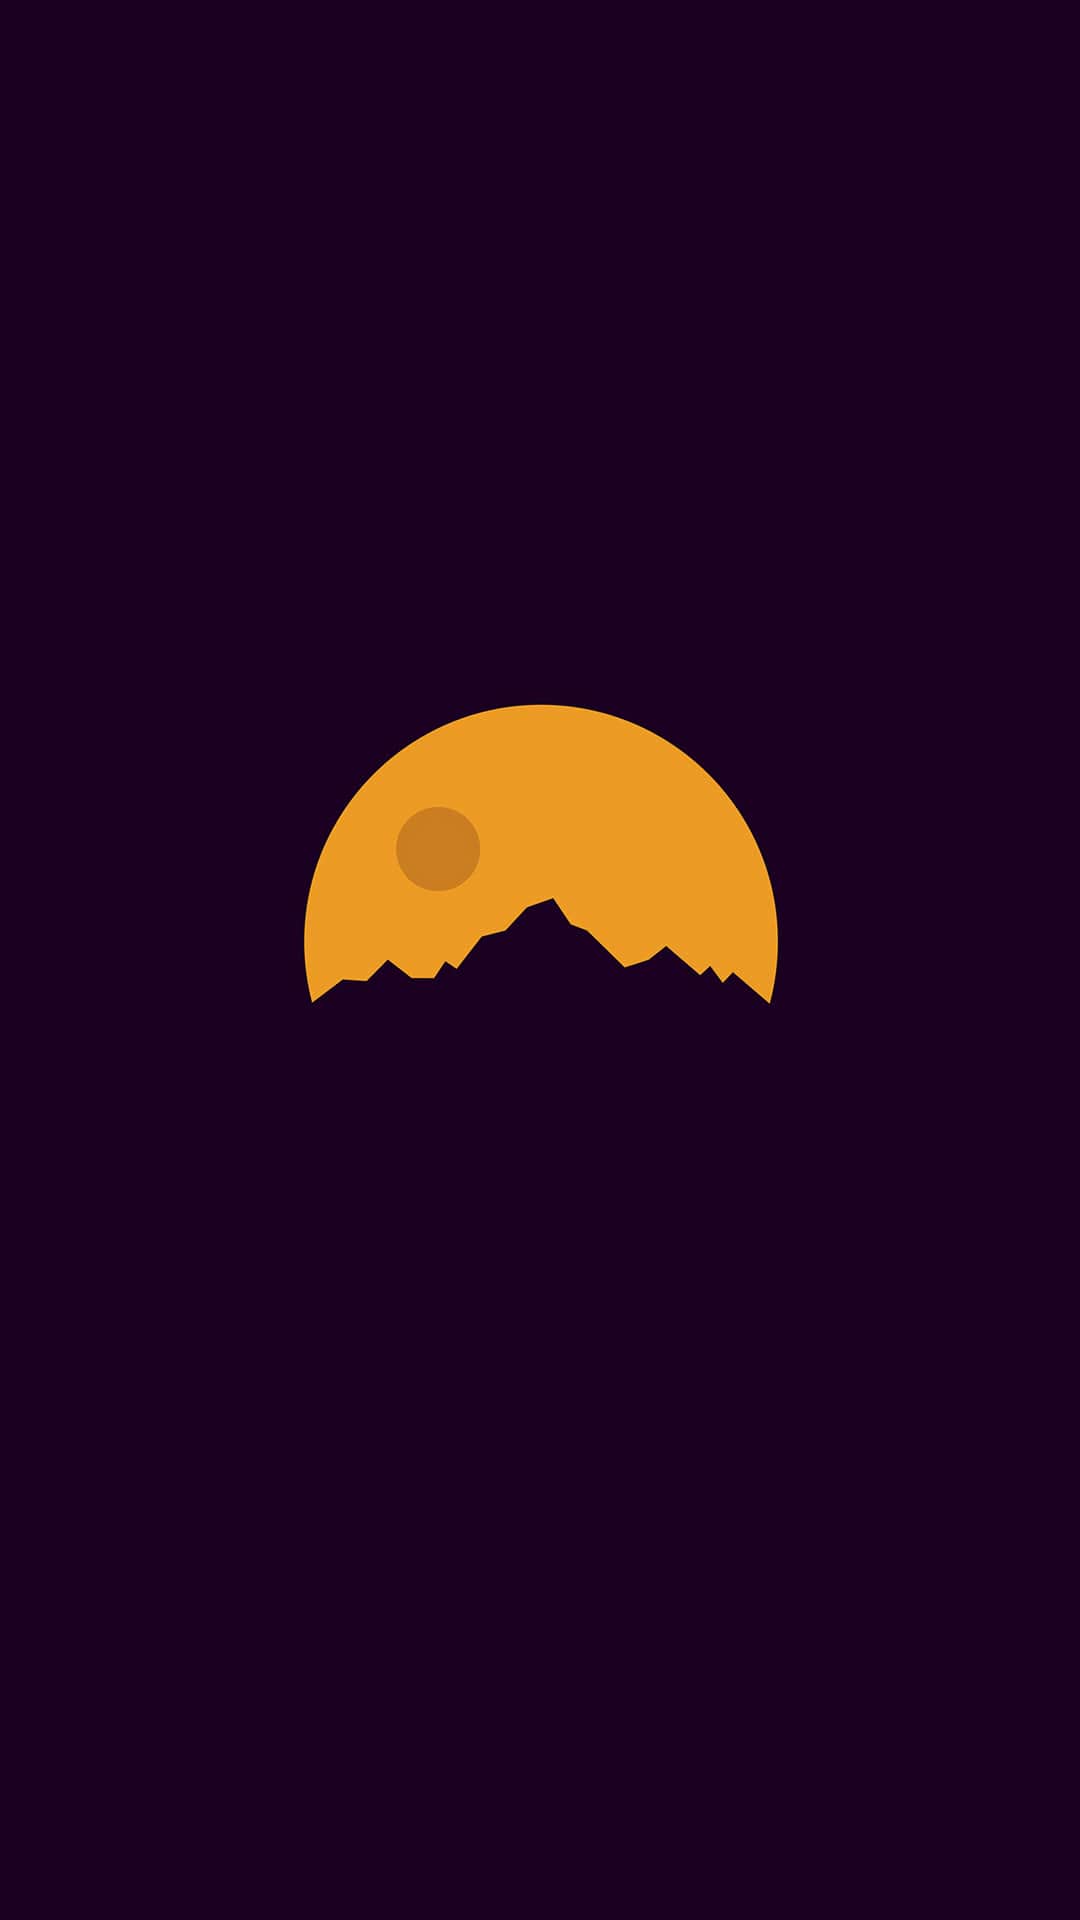 hình nền mặt trăng trên núi giữa đêm đen